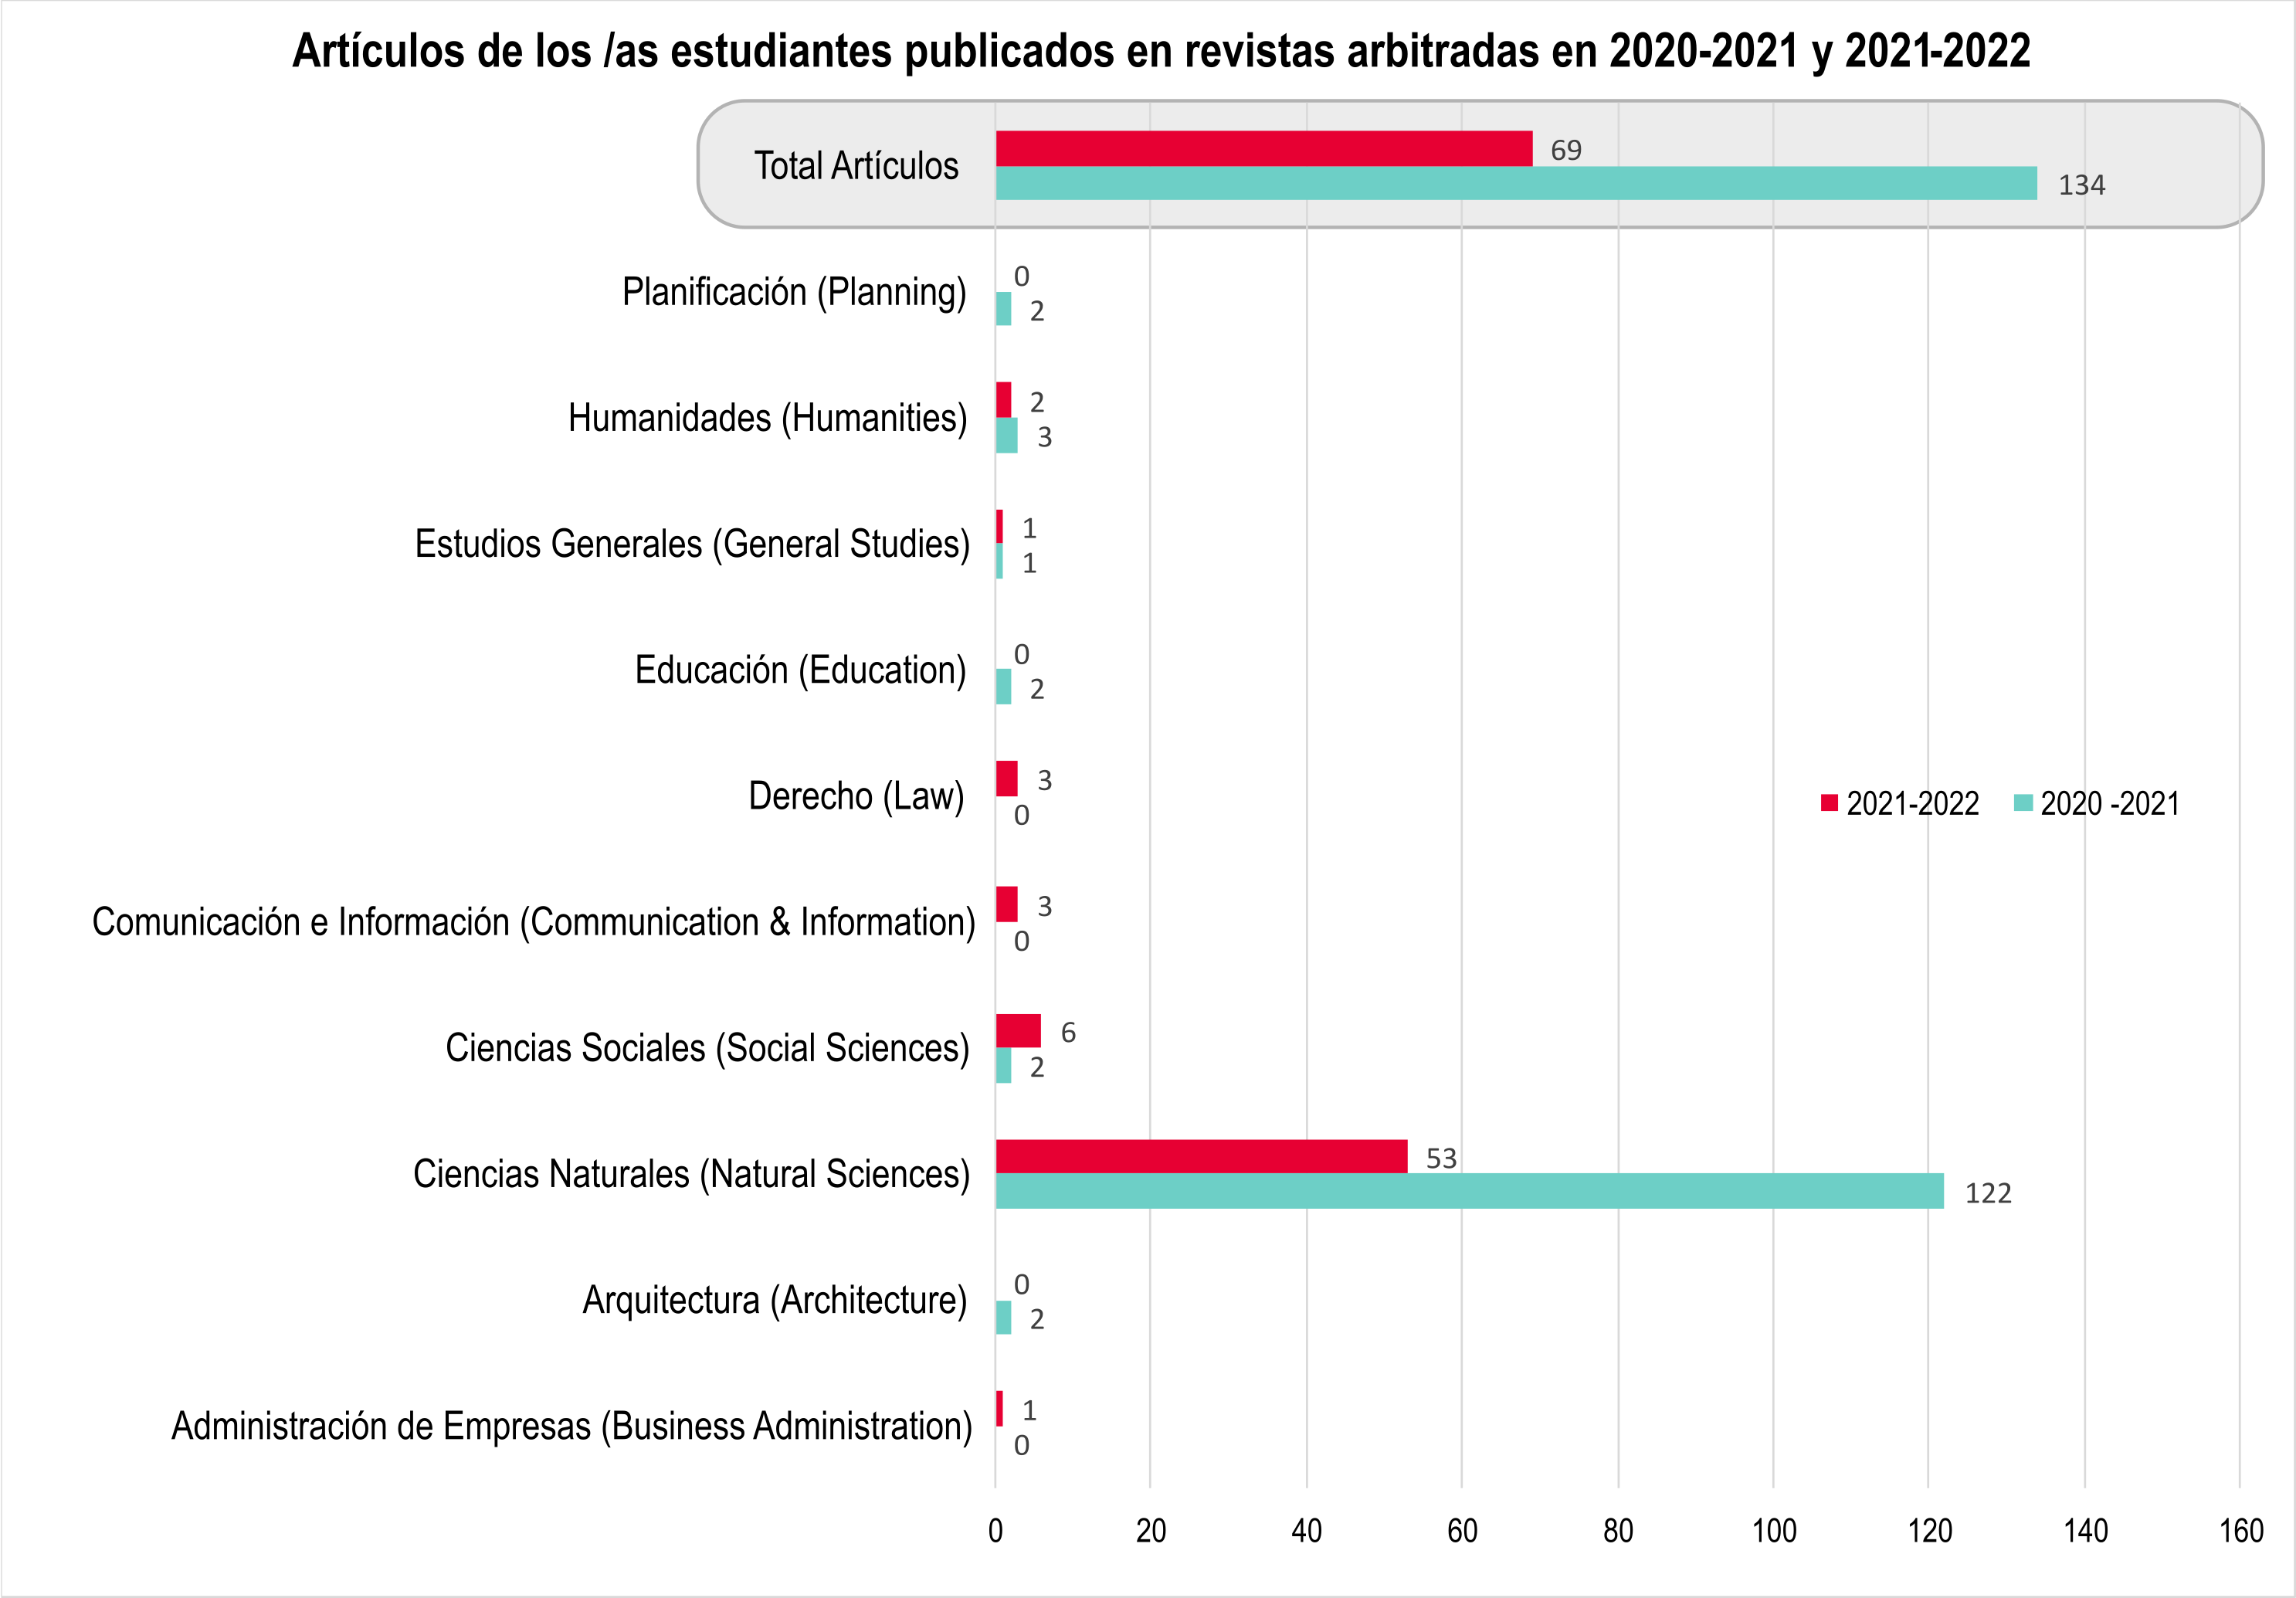 Gráfica de barra que muestra la cantidad de artículos publicados por estudiantes en revistas arbitradas en 2020-21 y 2021-22 (un total de 69 artículos publicados en 2021-2022 y 134 artículos en 2020-2021)